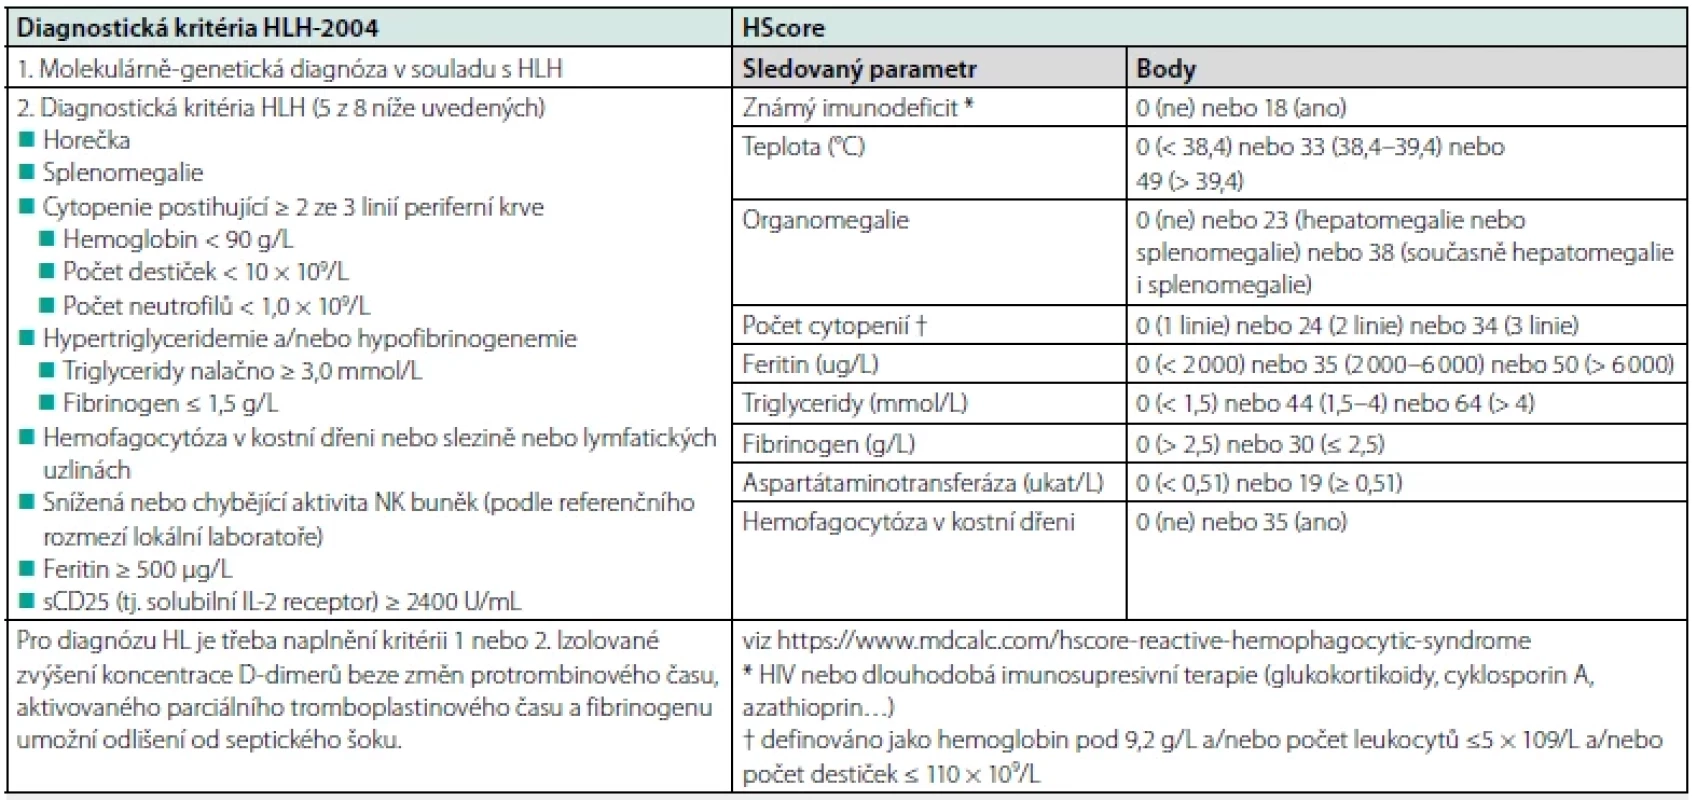 Diagnostická kritéria HLH-2004 a HScore